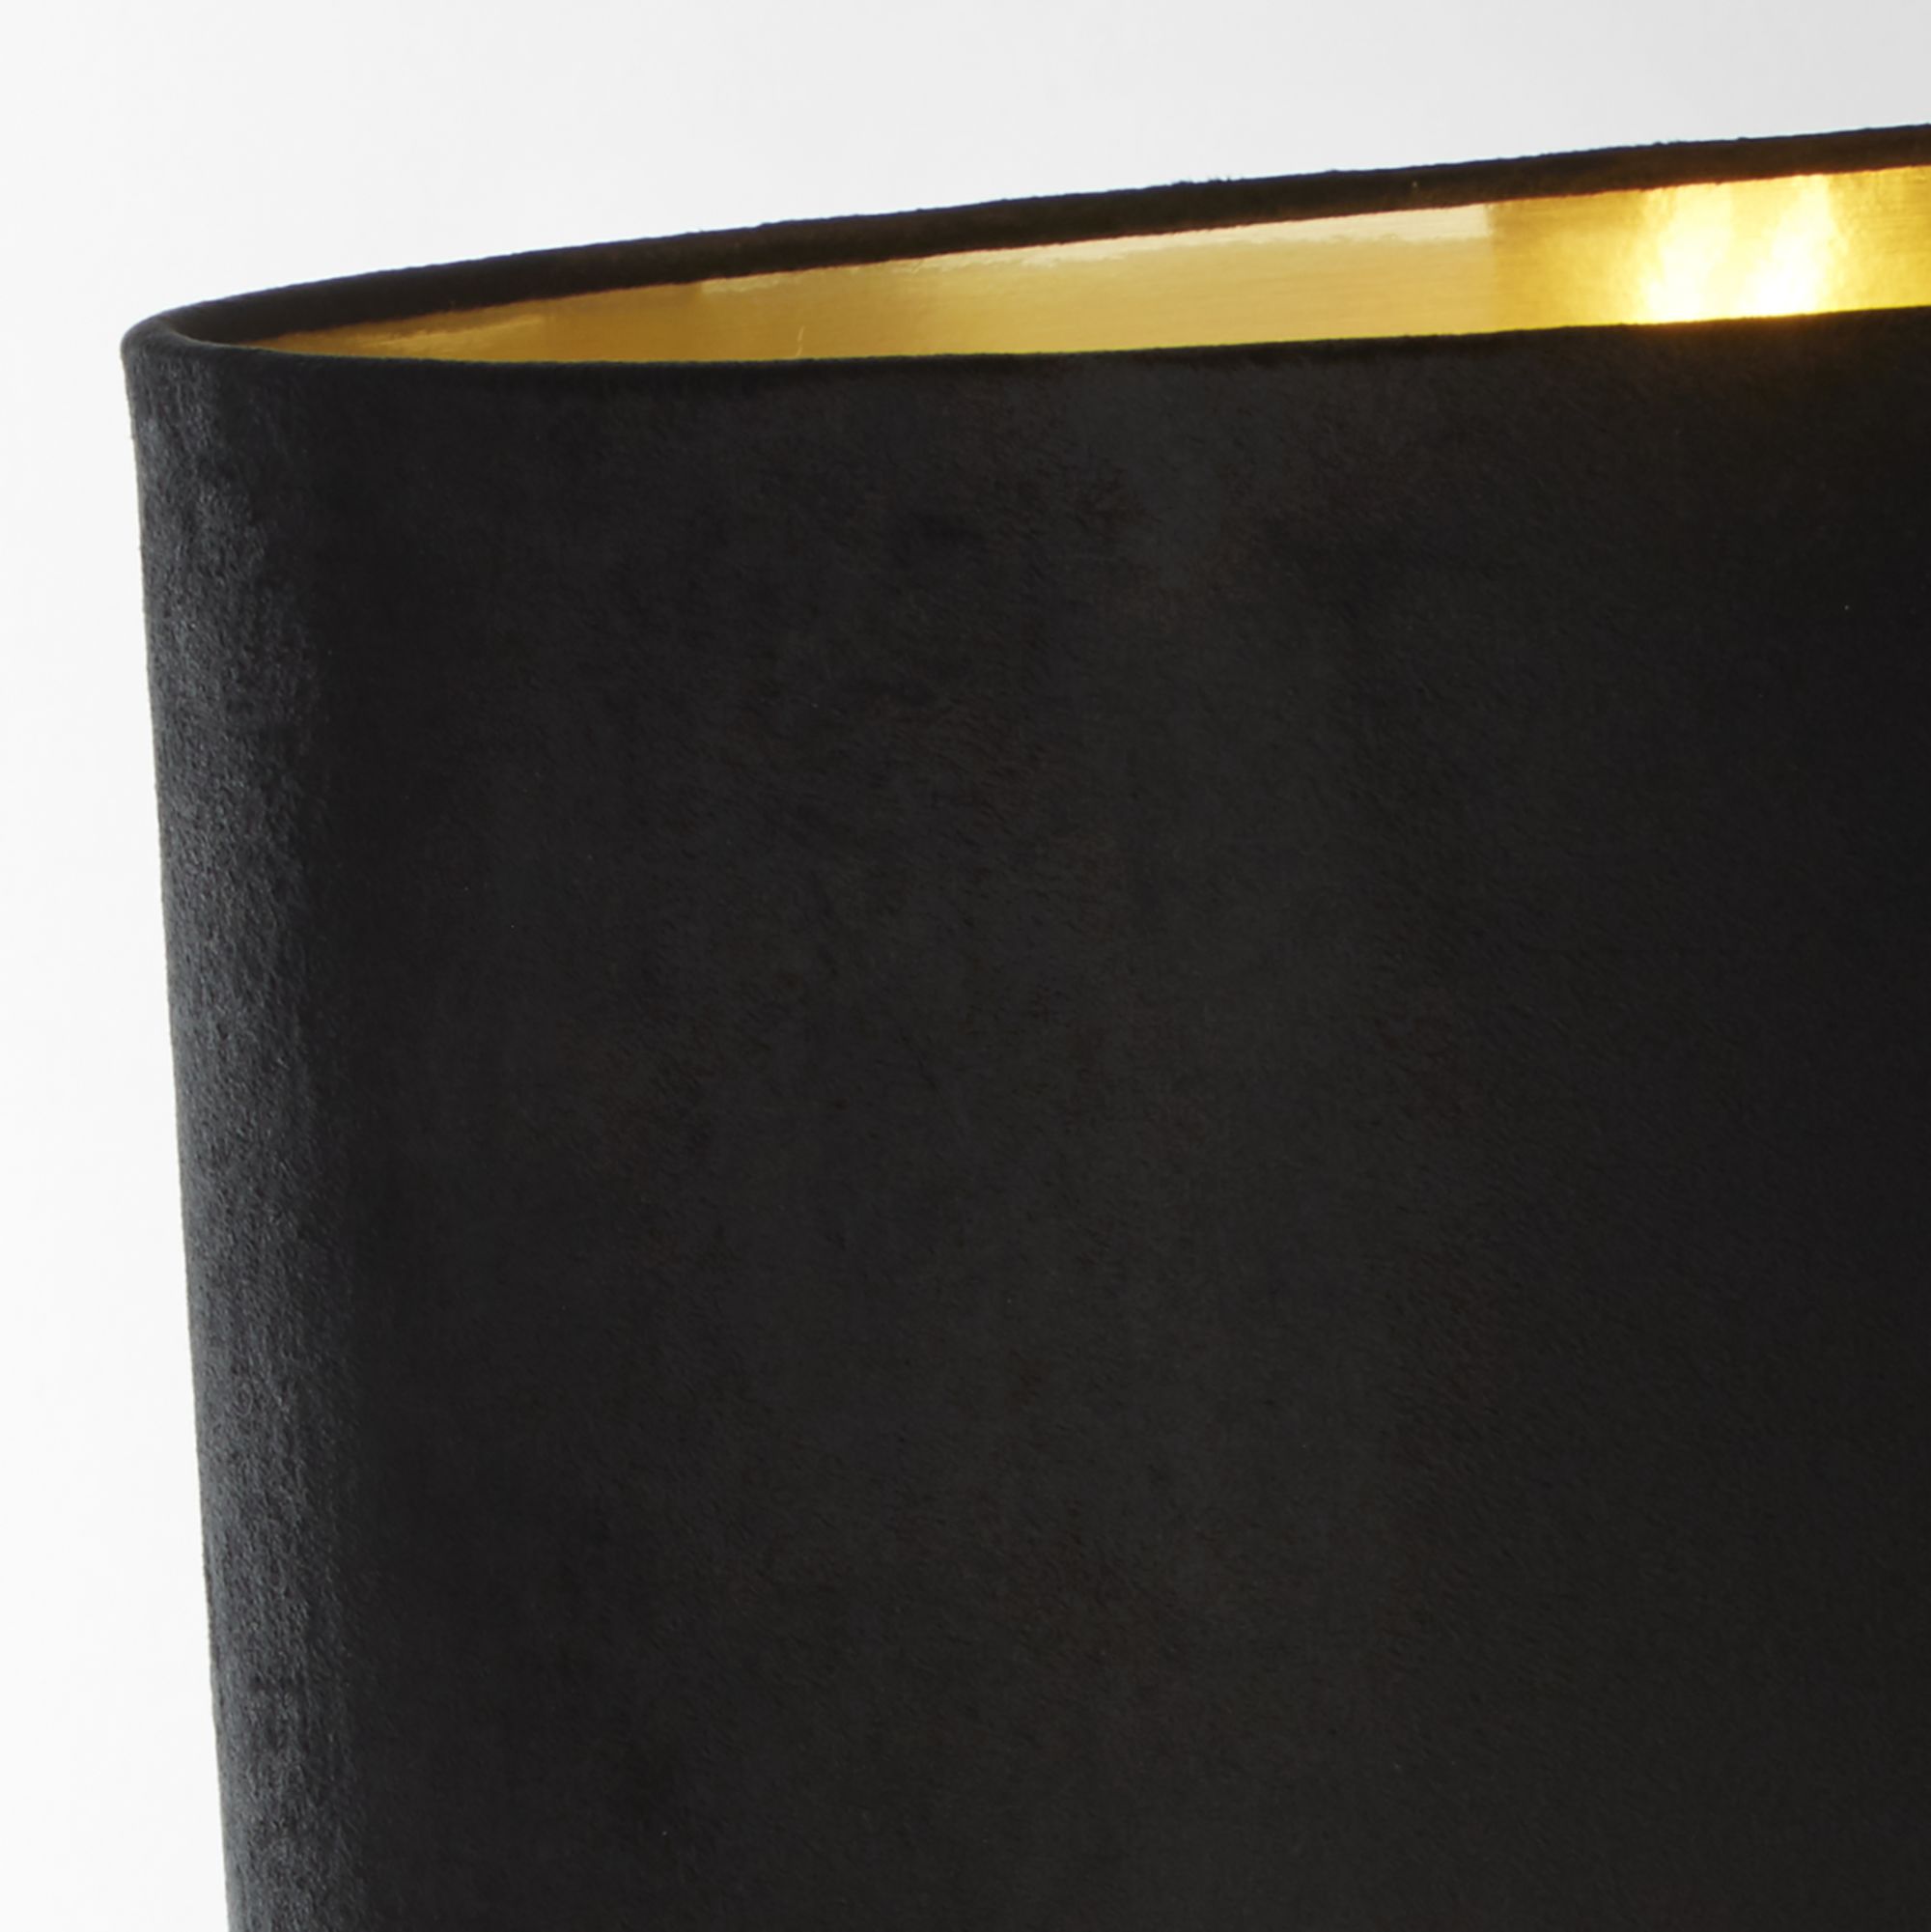 Whitby Table Lamp - Antique Brass & Black Velvet Shade